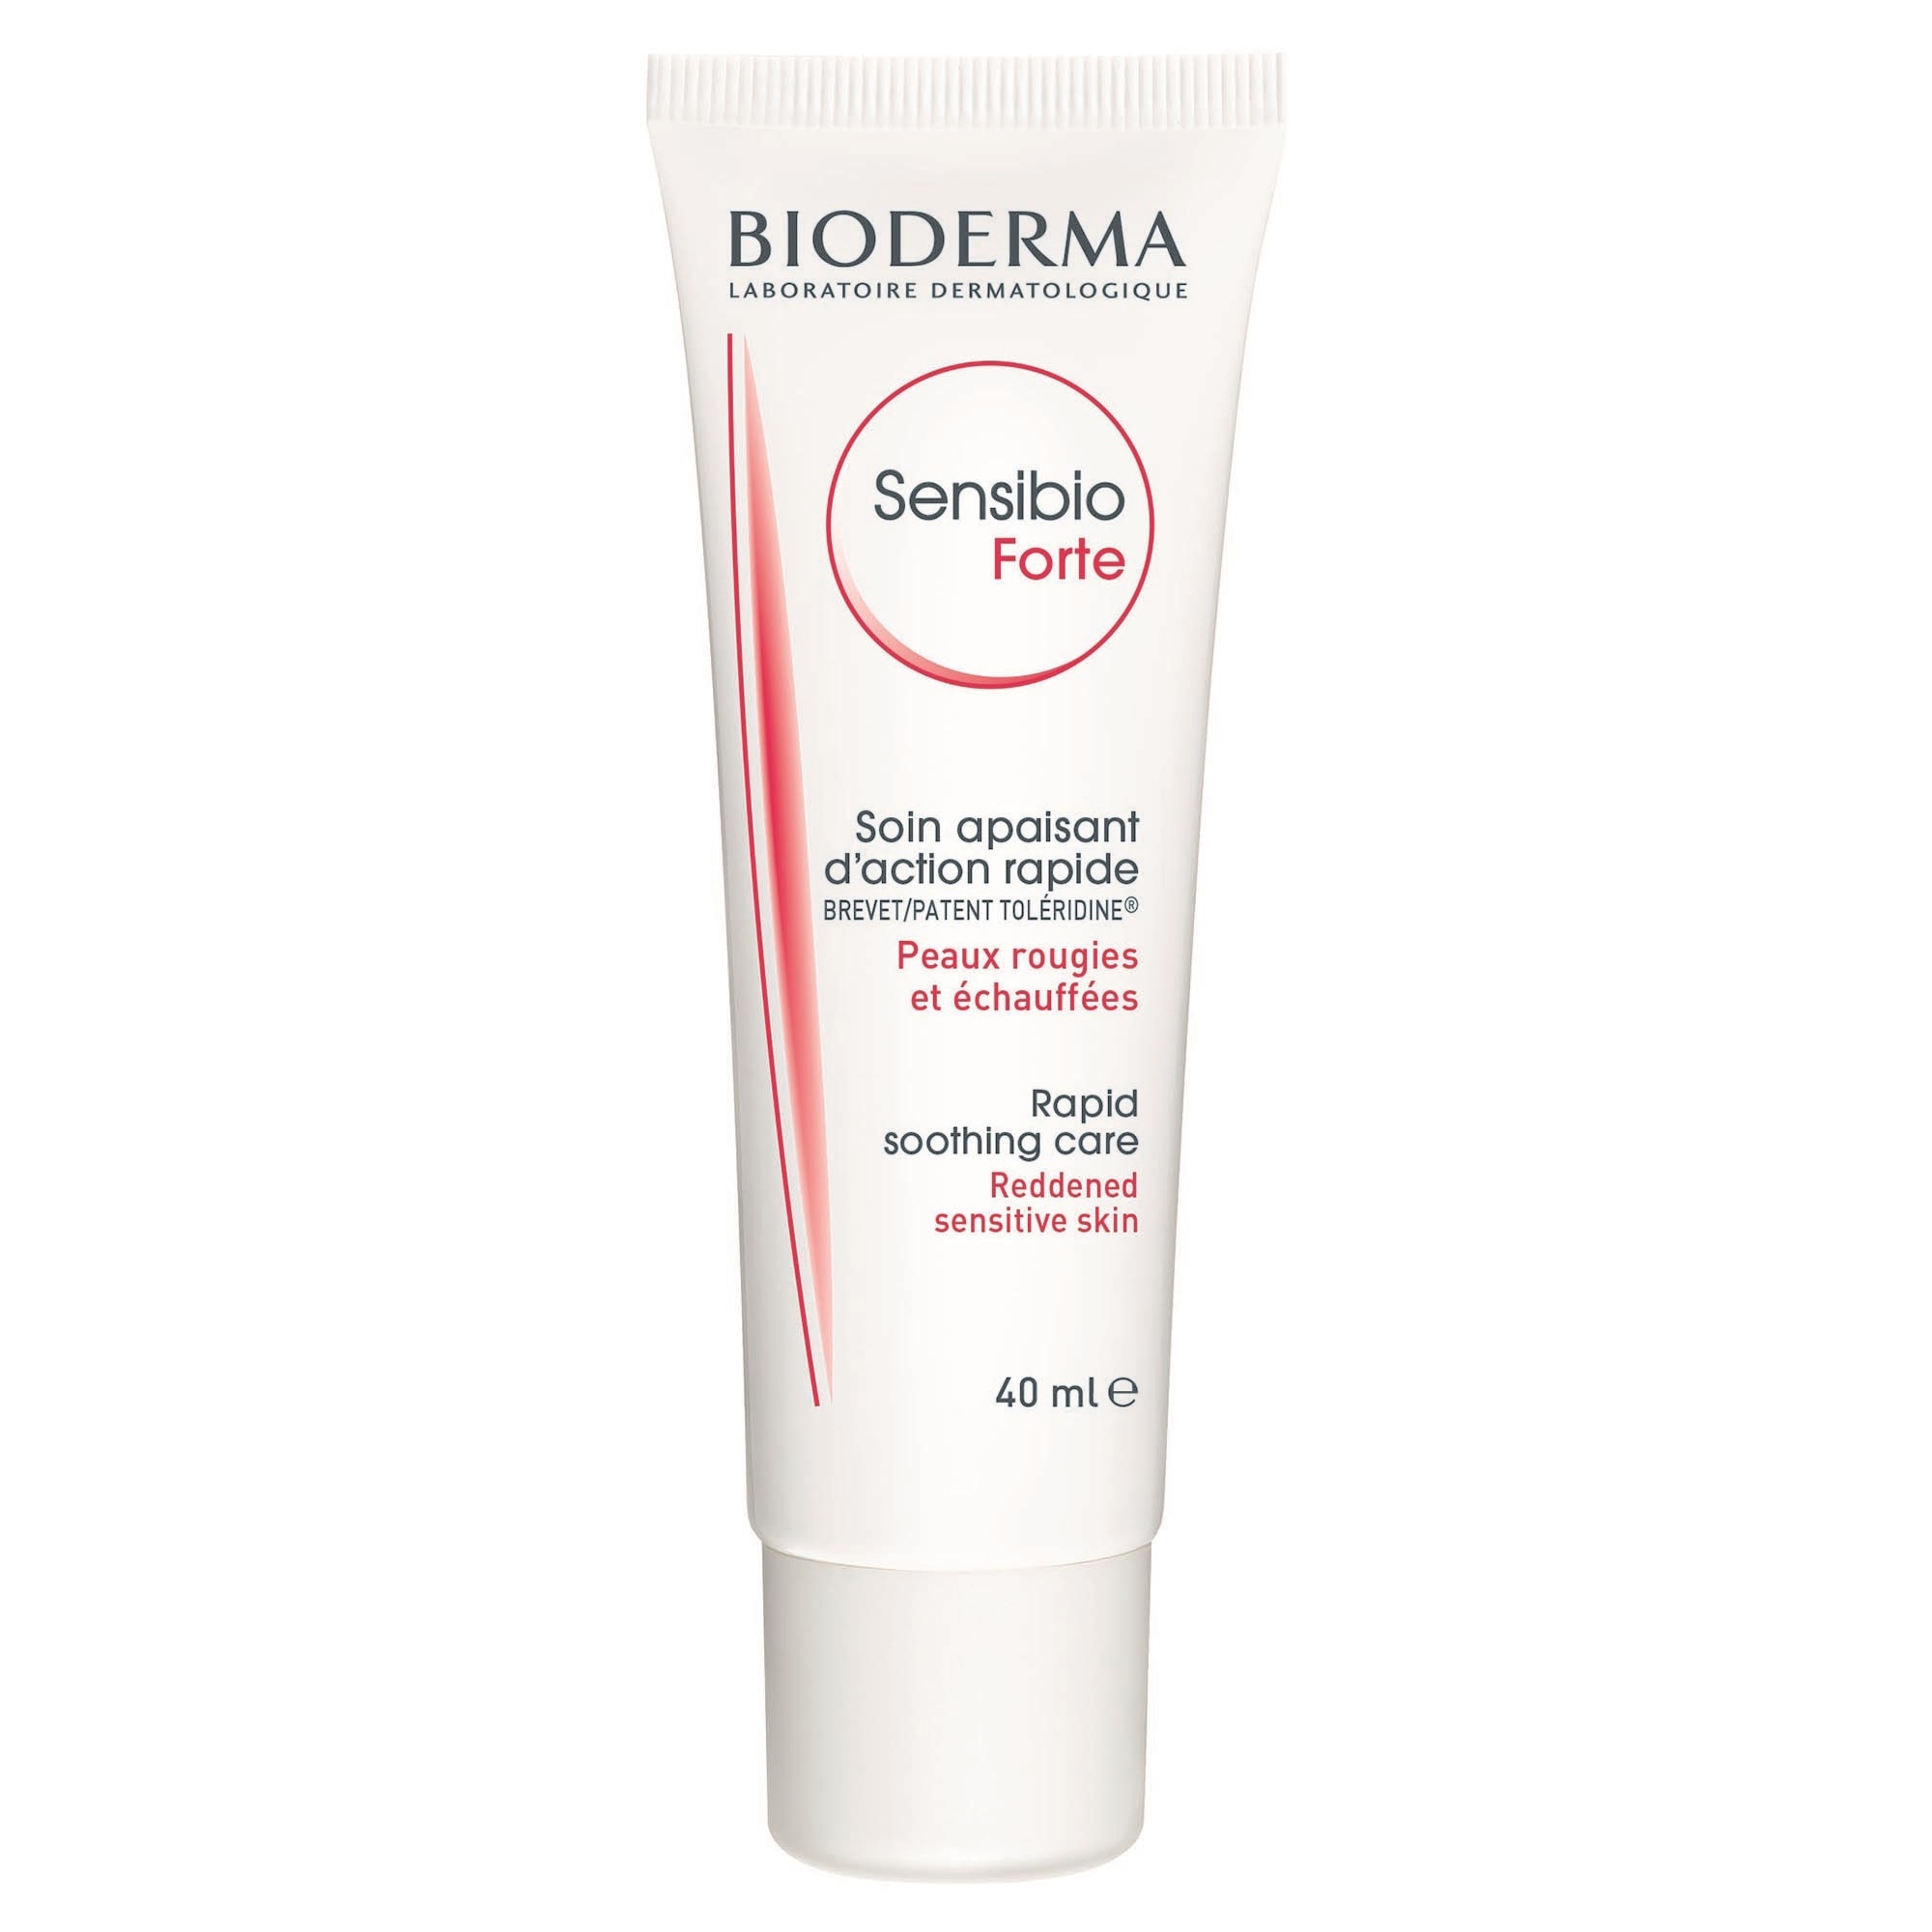 Cosmetice pentru femei Bioderma - ShopMania